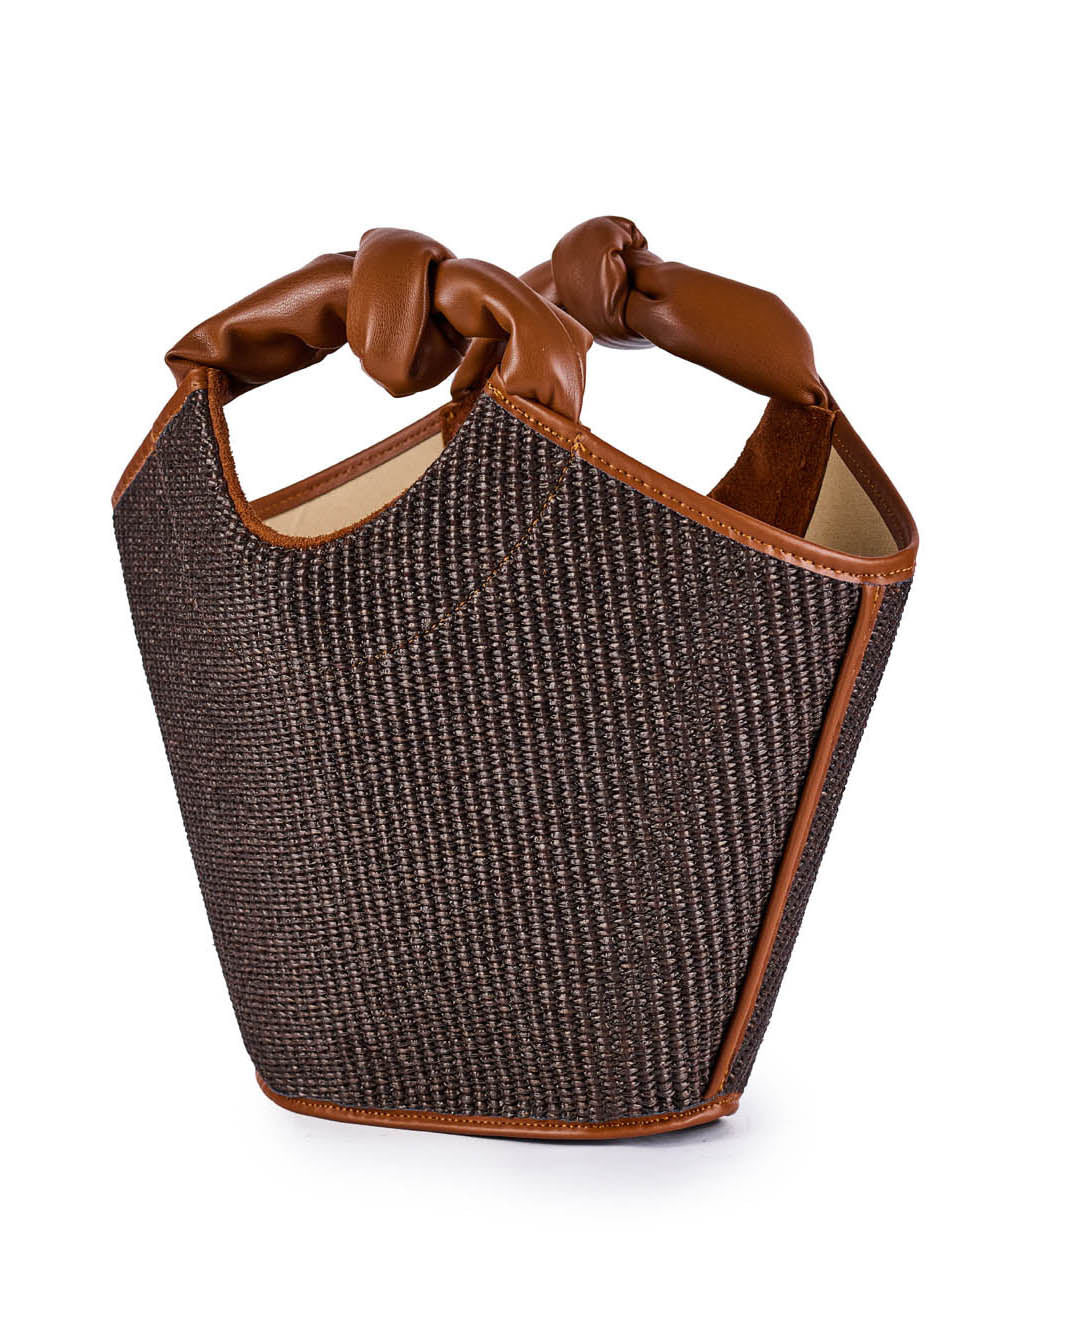 Stylish brown woven handbag with leather handles